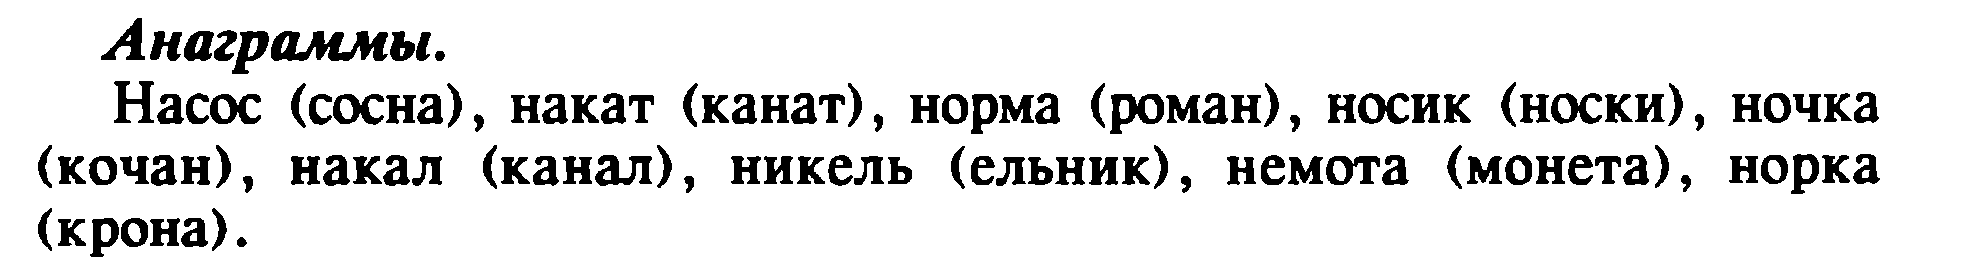 Урок по русской грамоте «Звук [л], [л]. Буквы Лл и Лл»